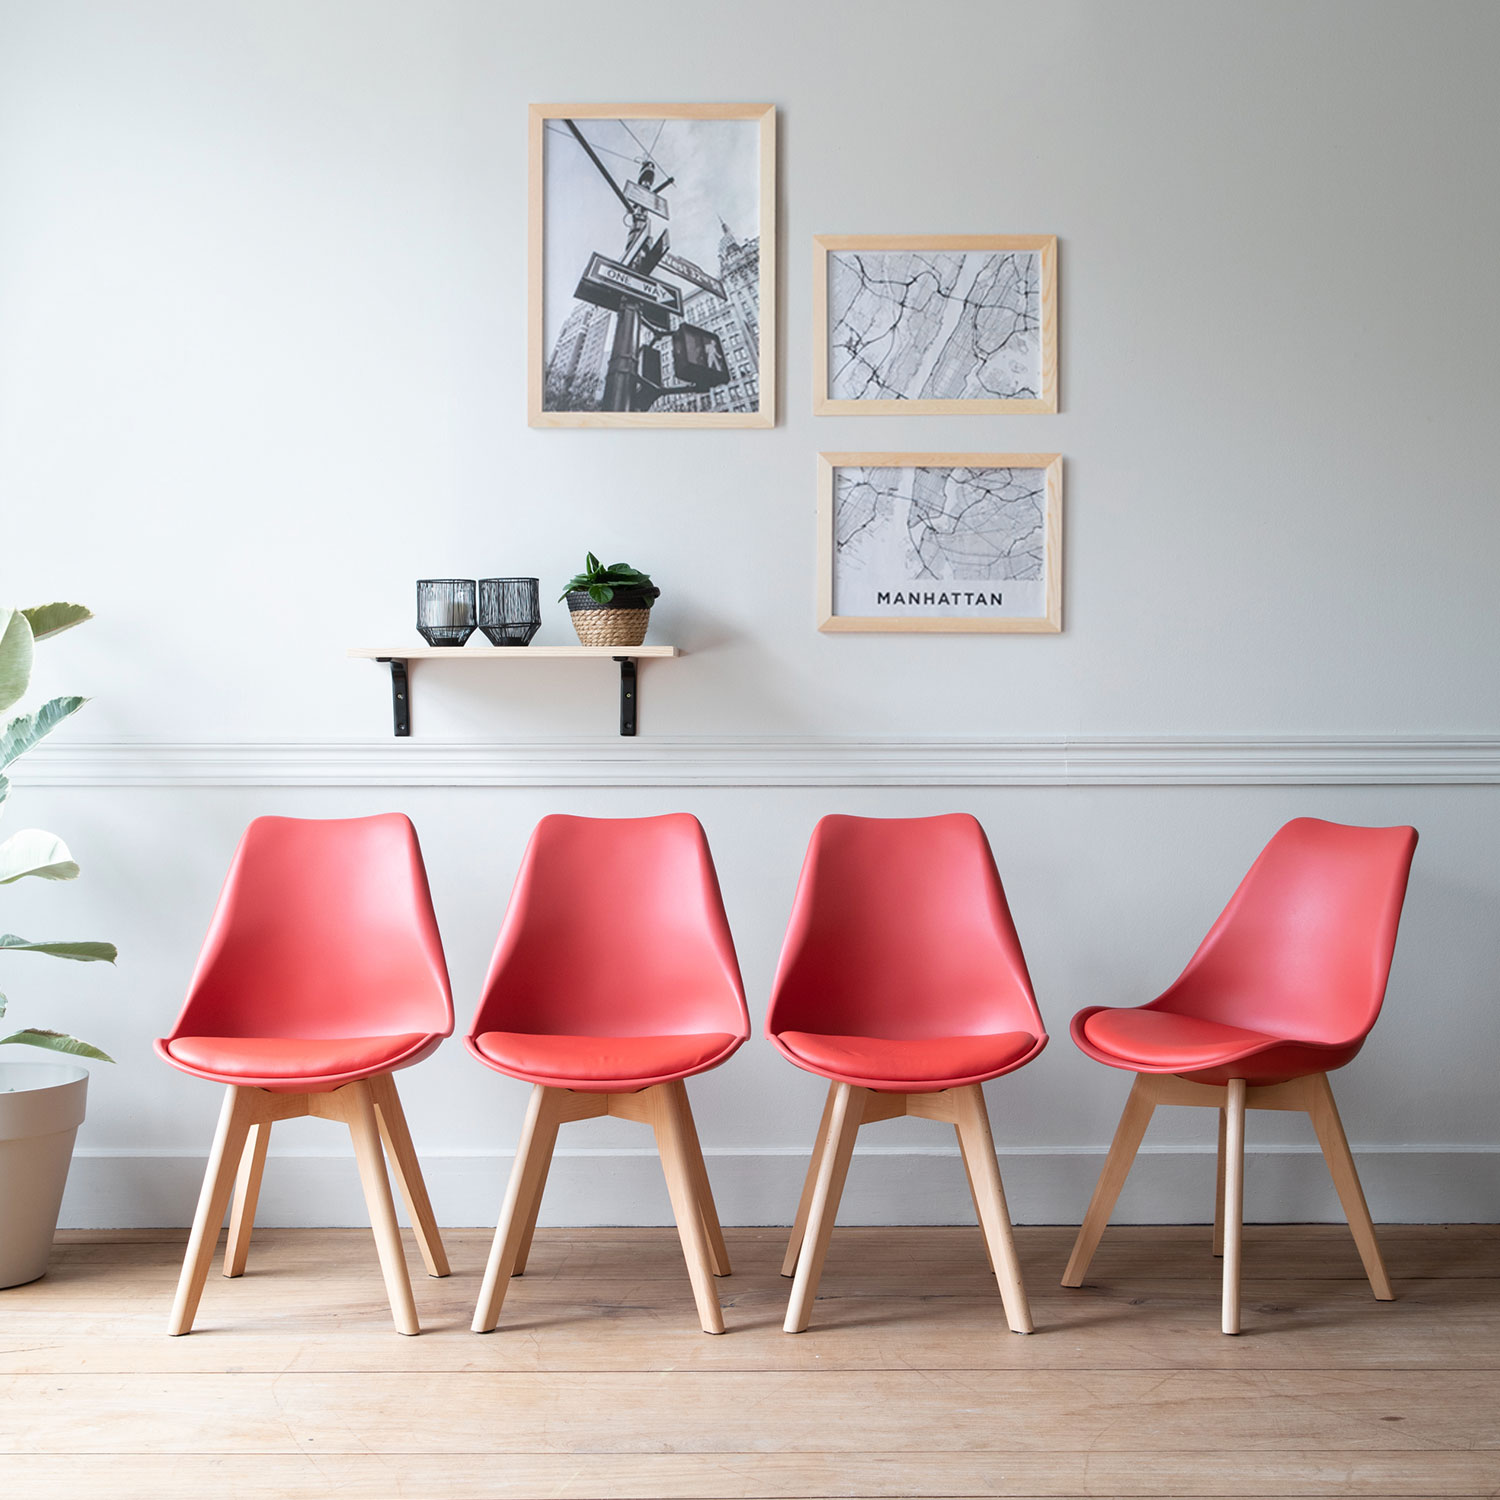 Lote de 4 sillas escandinavas NORA color rojo con cojín